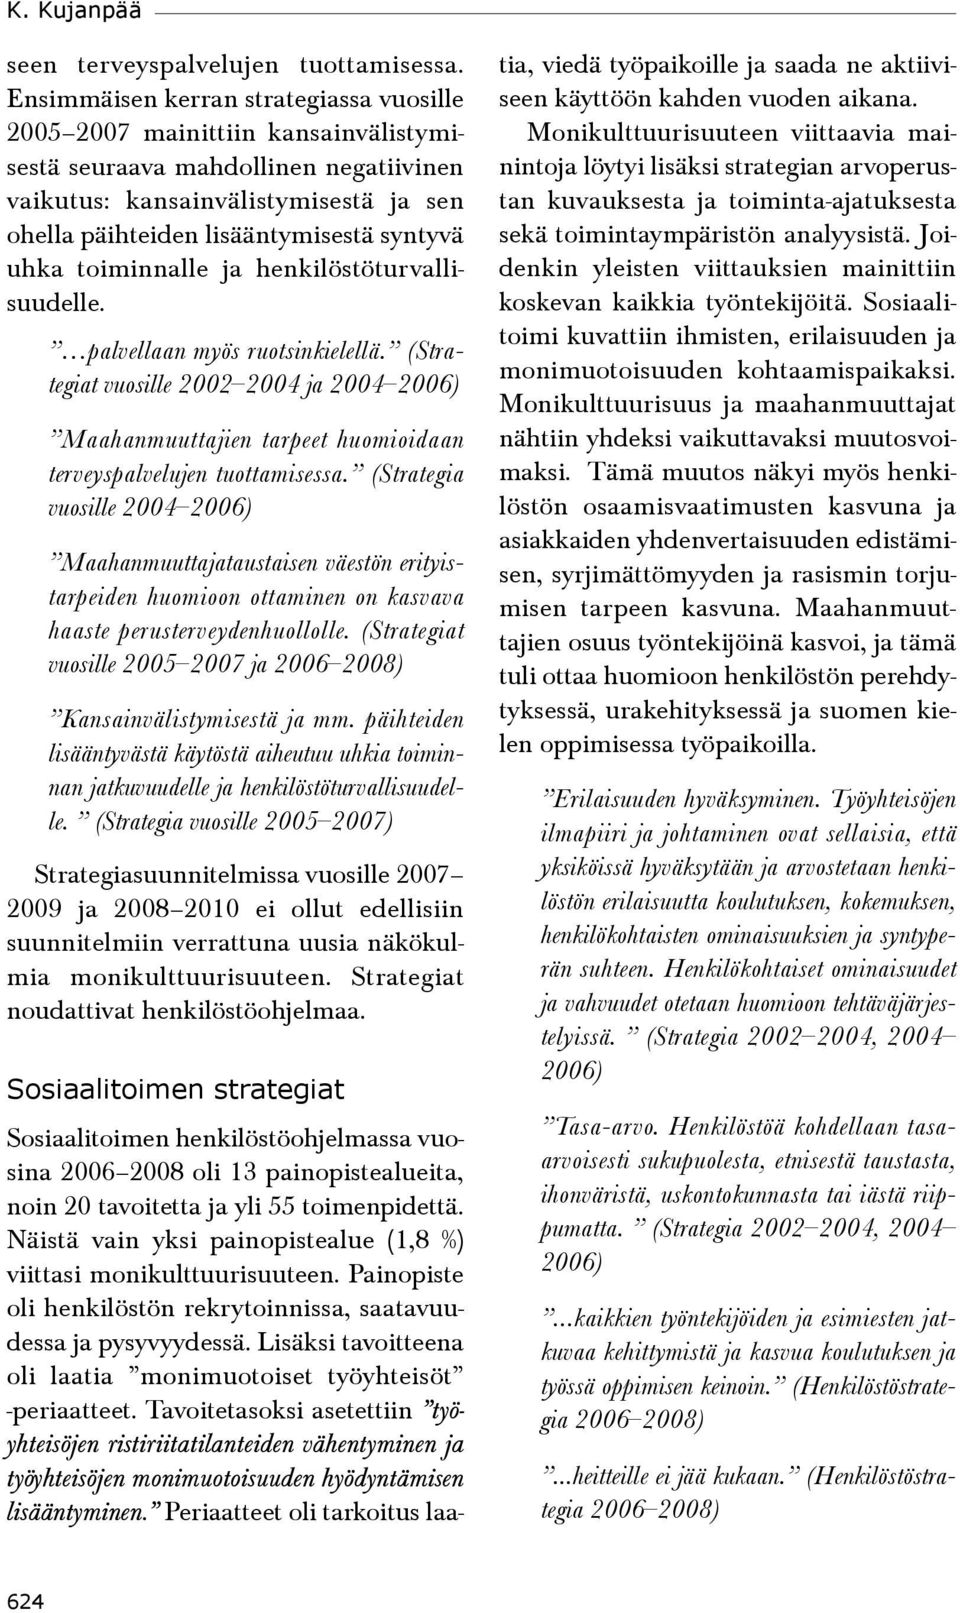 uhka toiminnalle ja henkilöstöturvallisuudelle. palvellaan myös ruotsinkielellä. (Strategiat vuosille 2002 2004 ja 2004 2006) Maahanmuuttajien tarpeet huomioidaan terveyspalvelujen tuottamisessa.